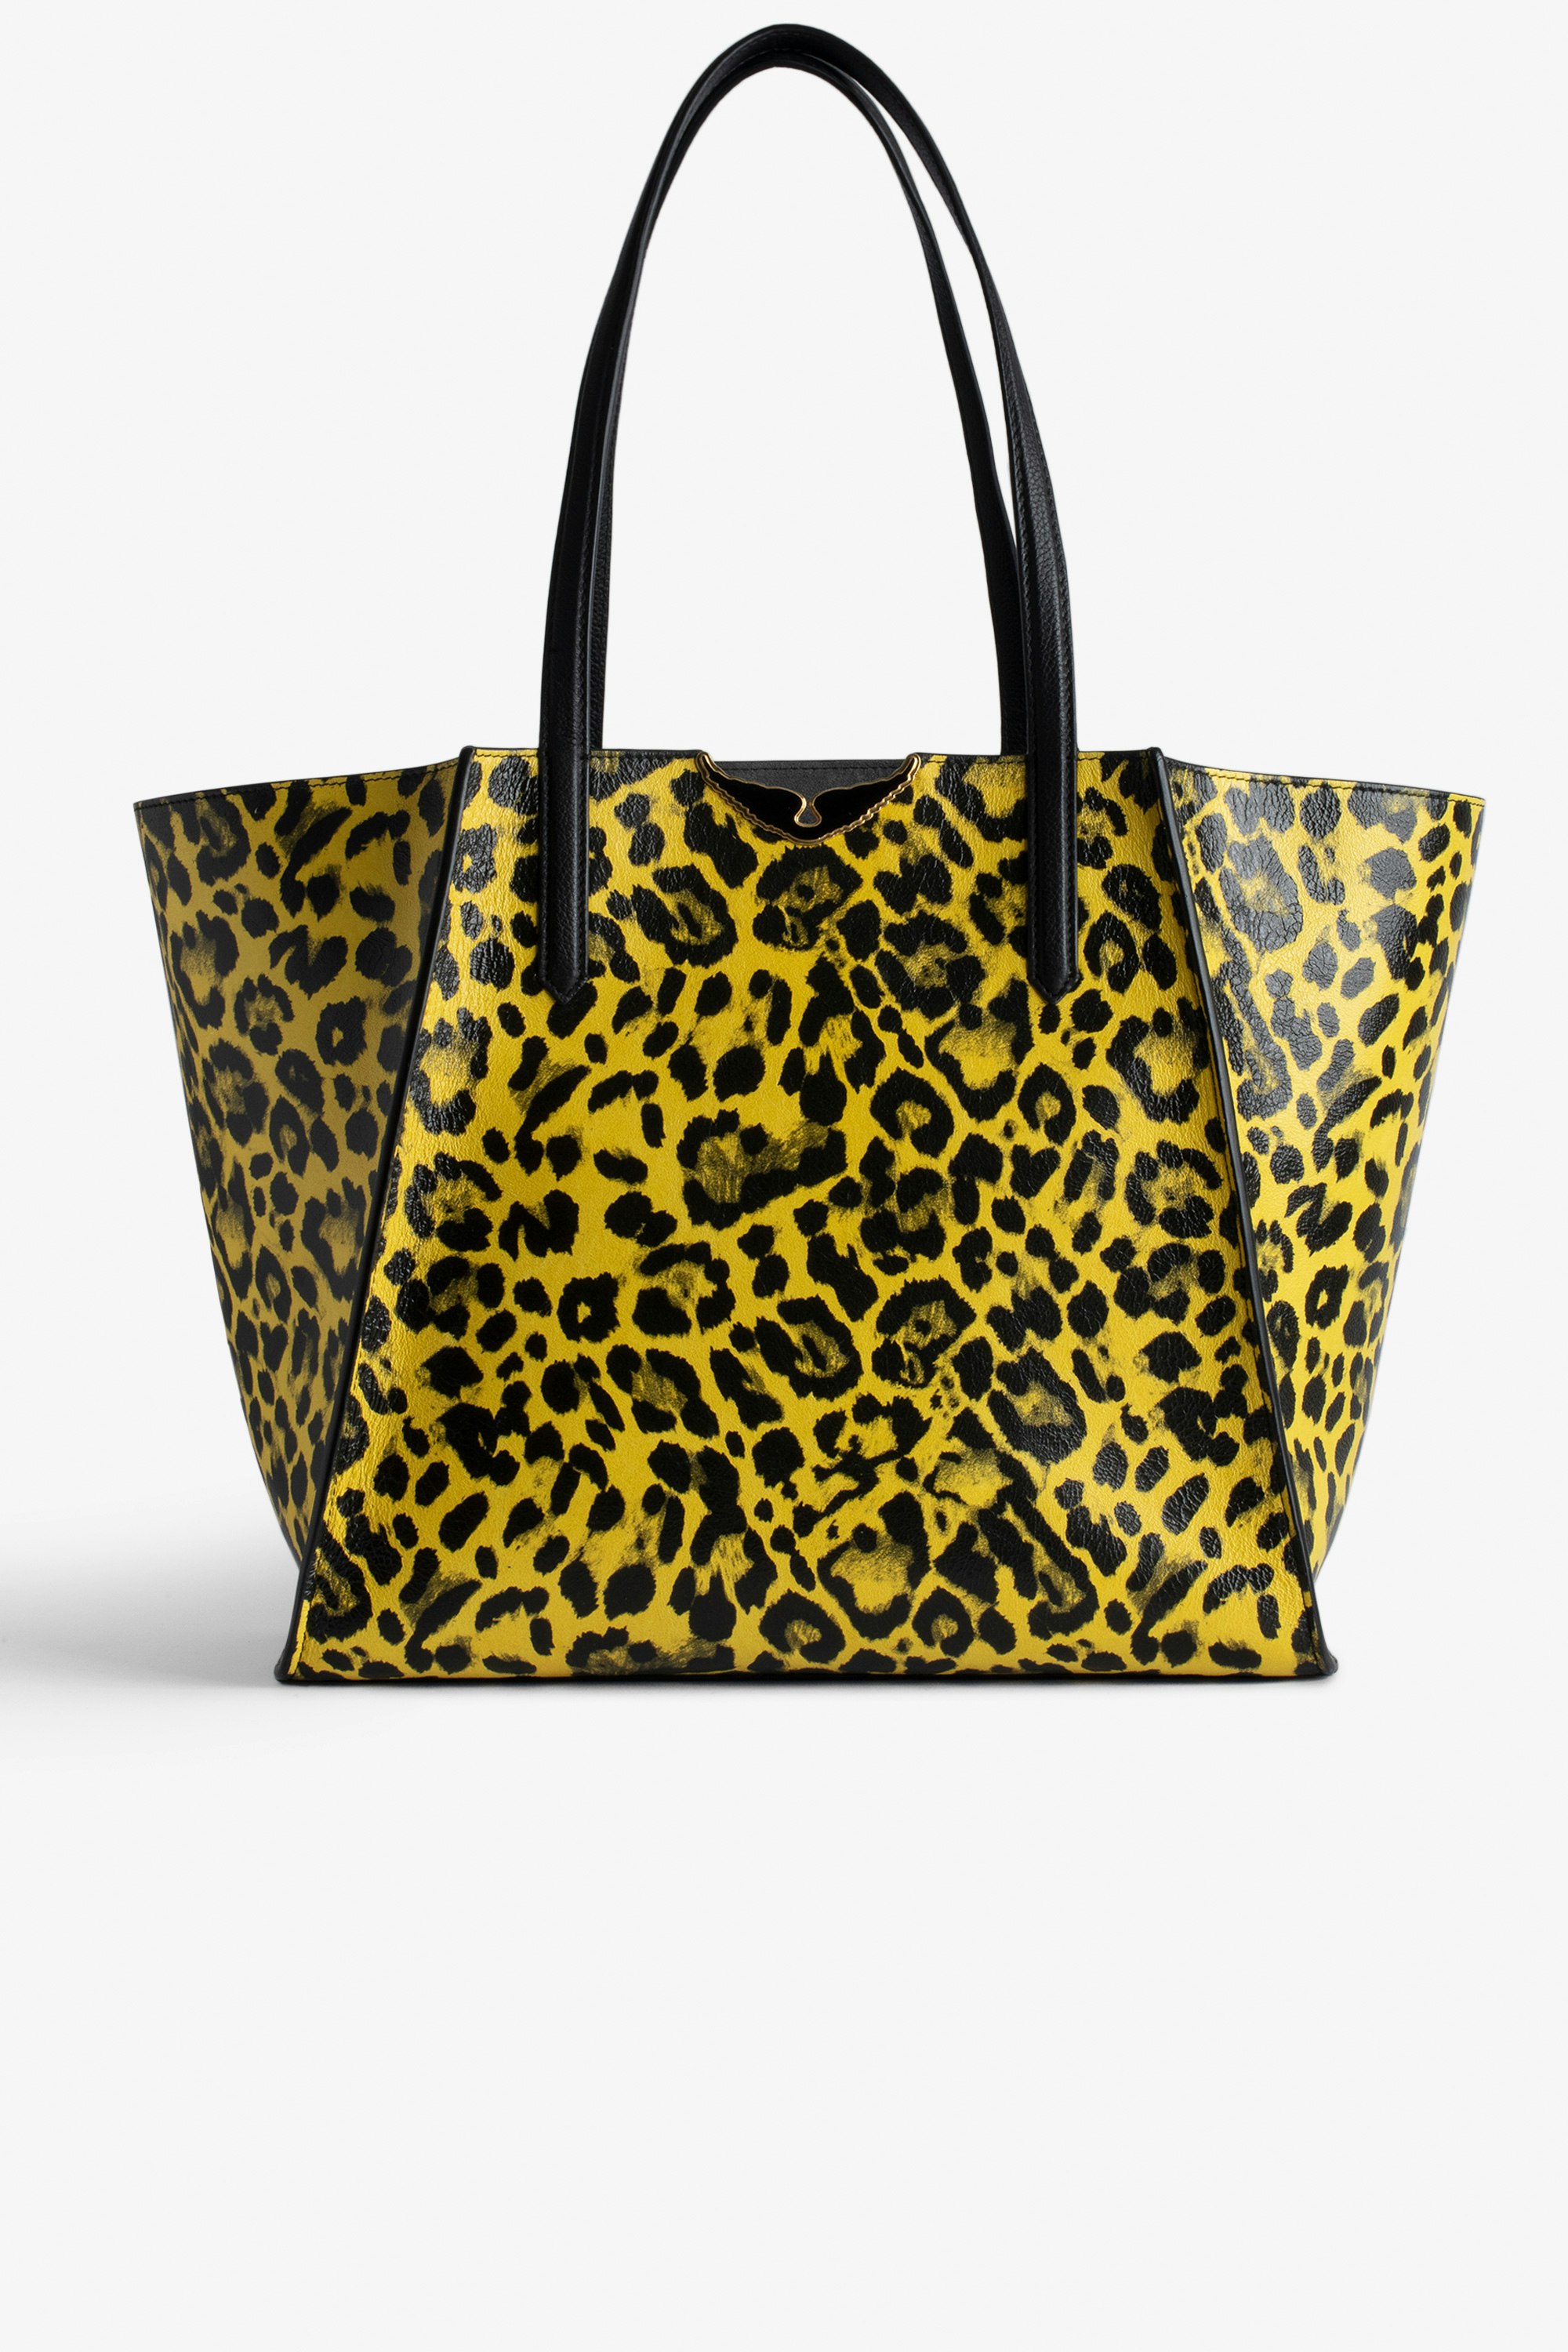 Sac Le Borderline Léopard - Sac cabas réversible en cuir brillant jaune imprimé léopard à anse et ailes en métal.